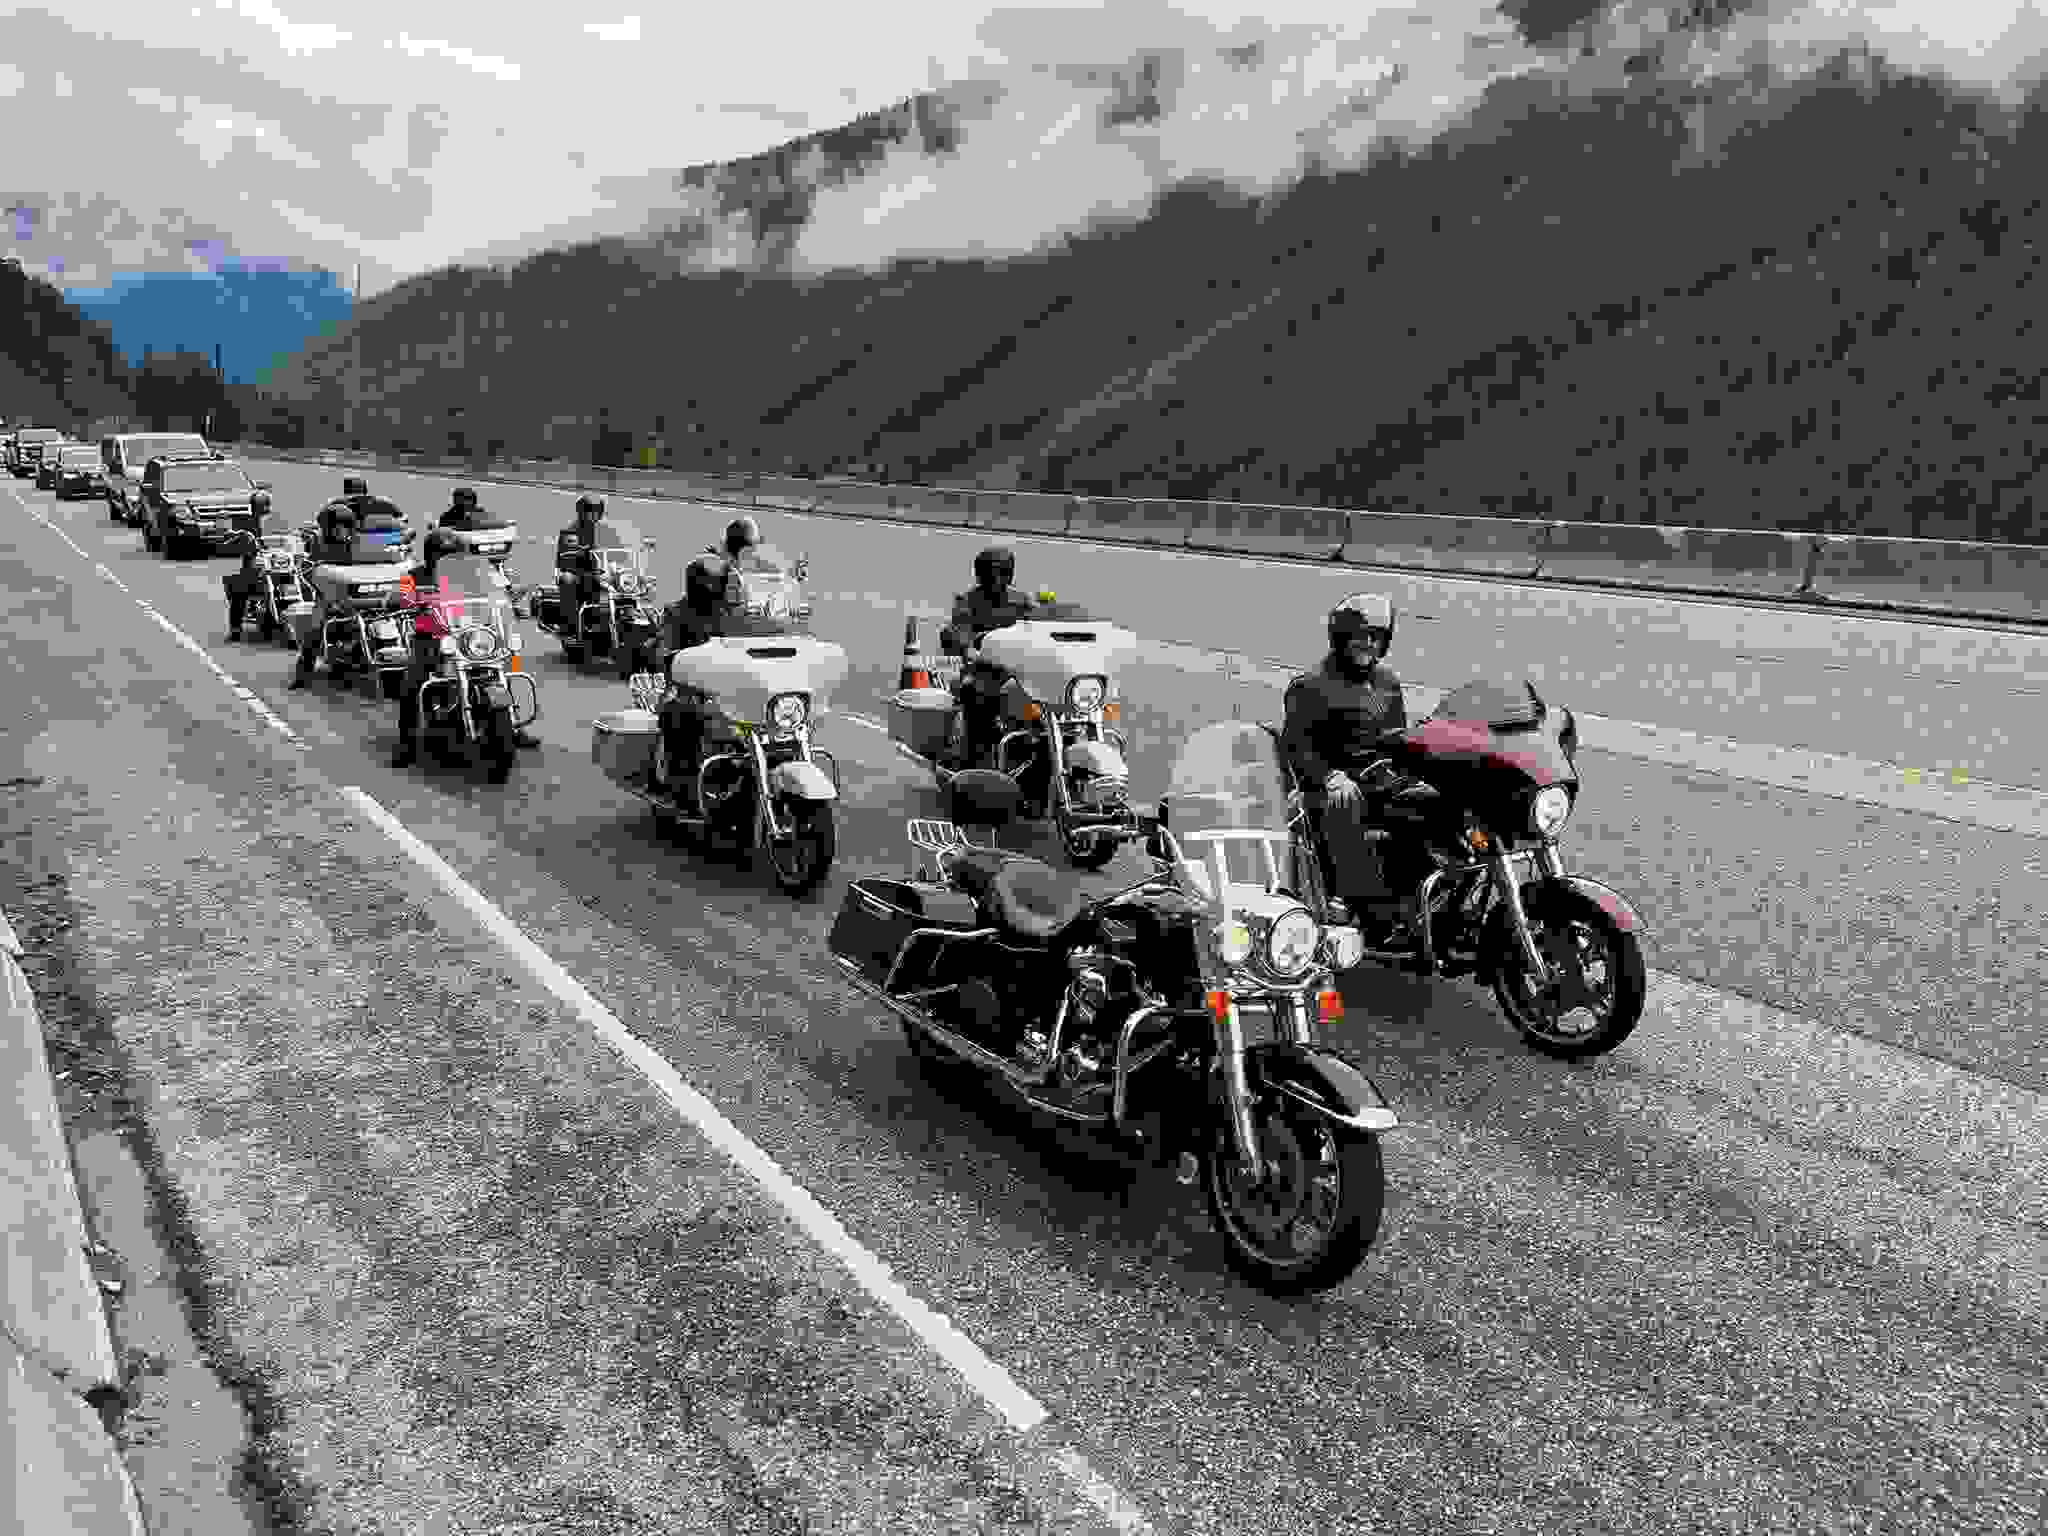 Mehrere Motorräder warten hintereinander auf einer Autobahn.